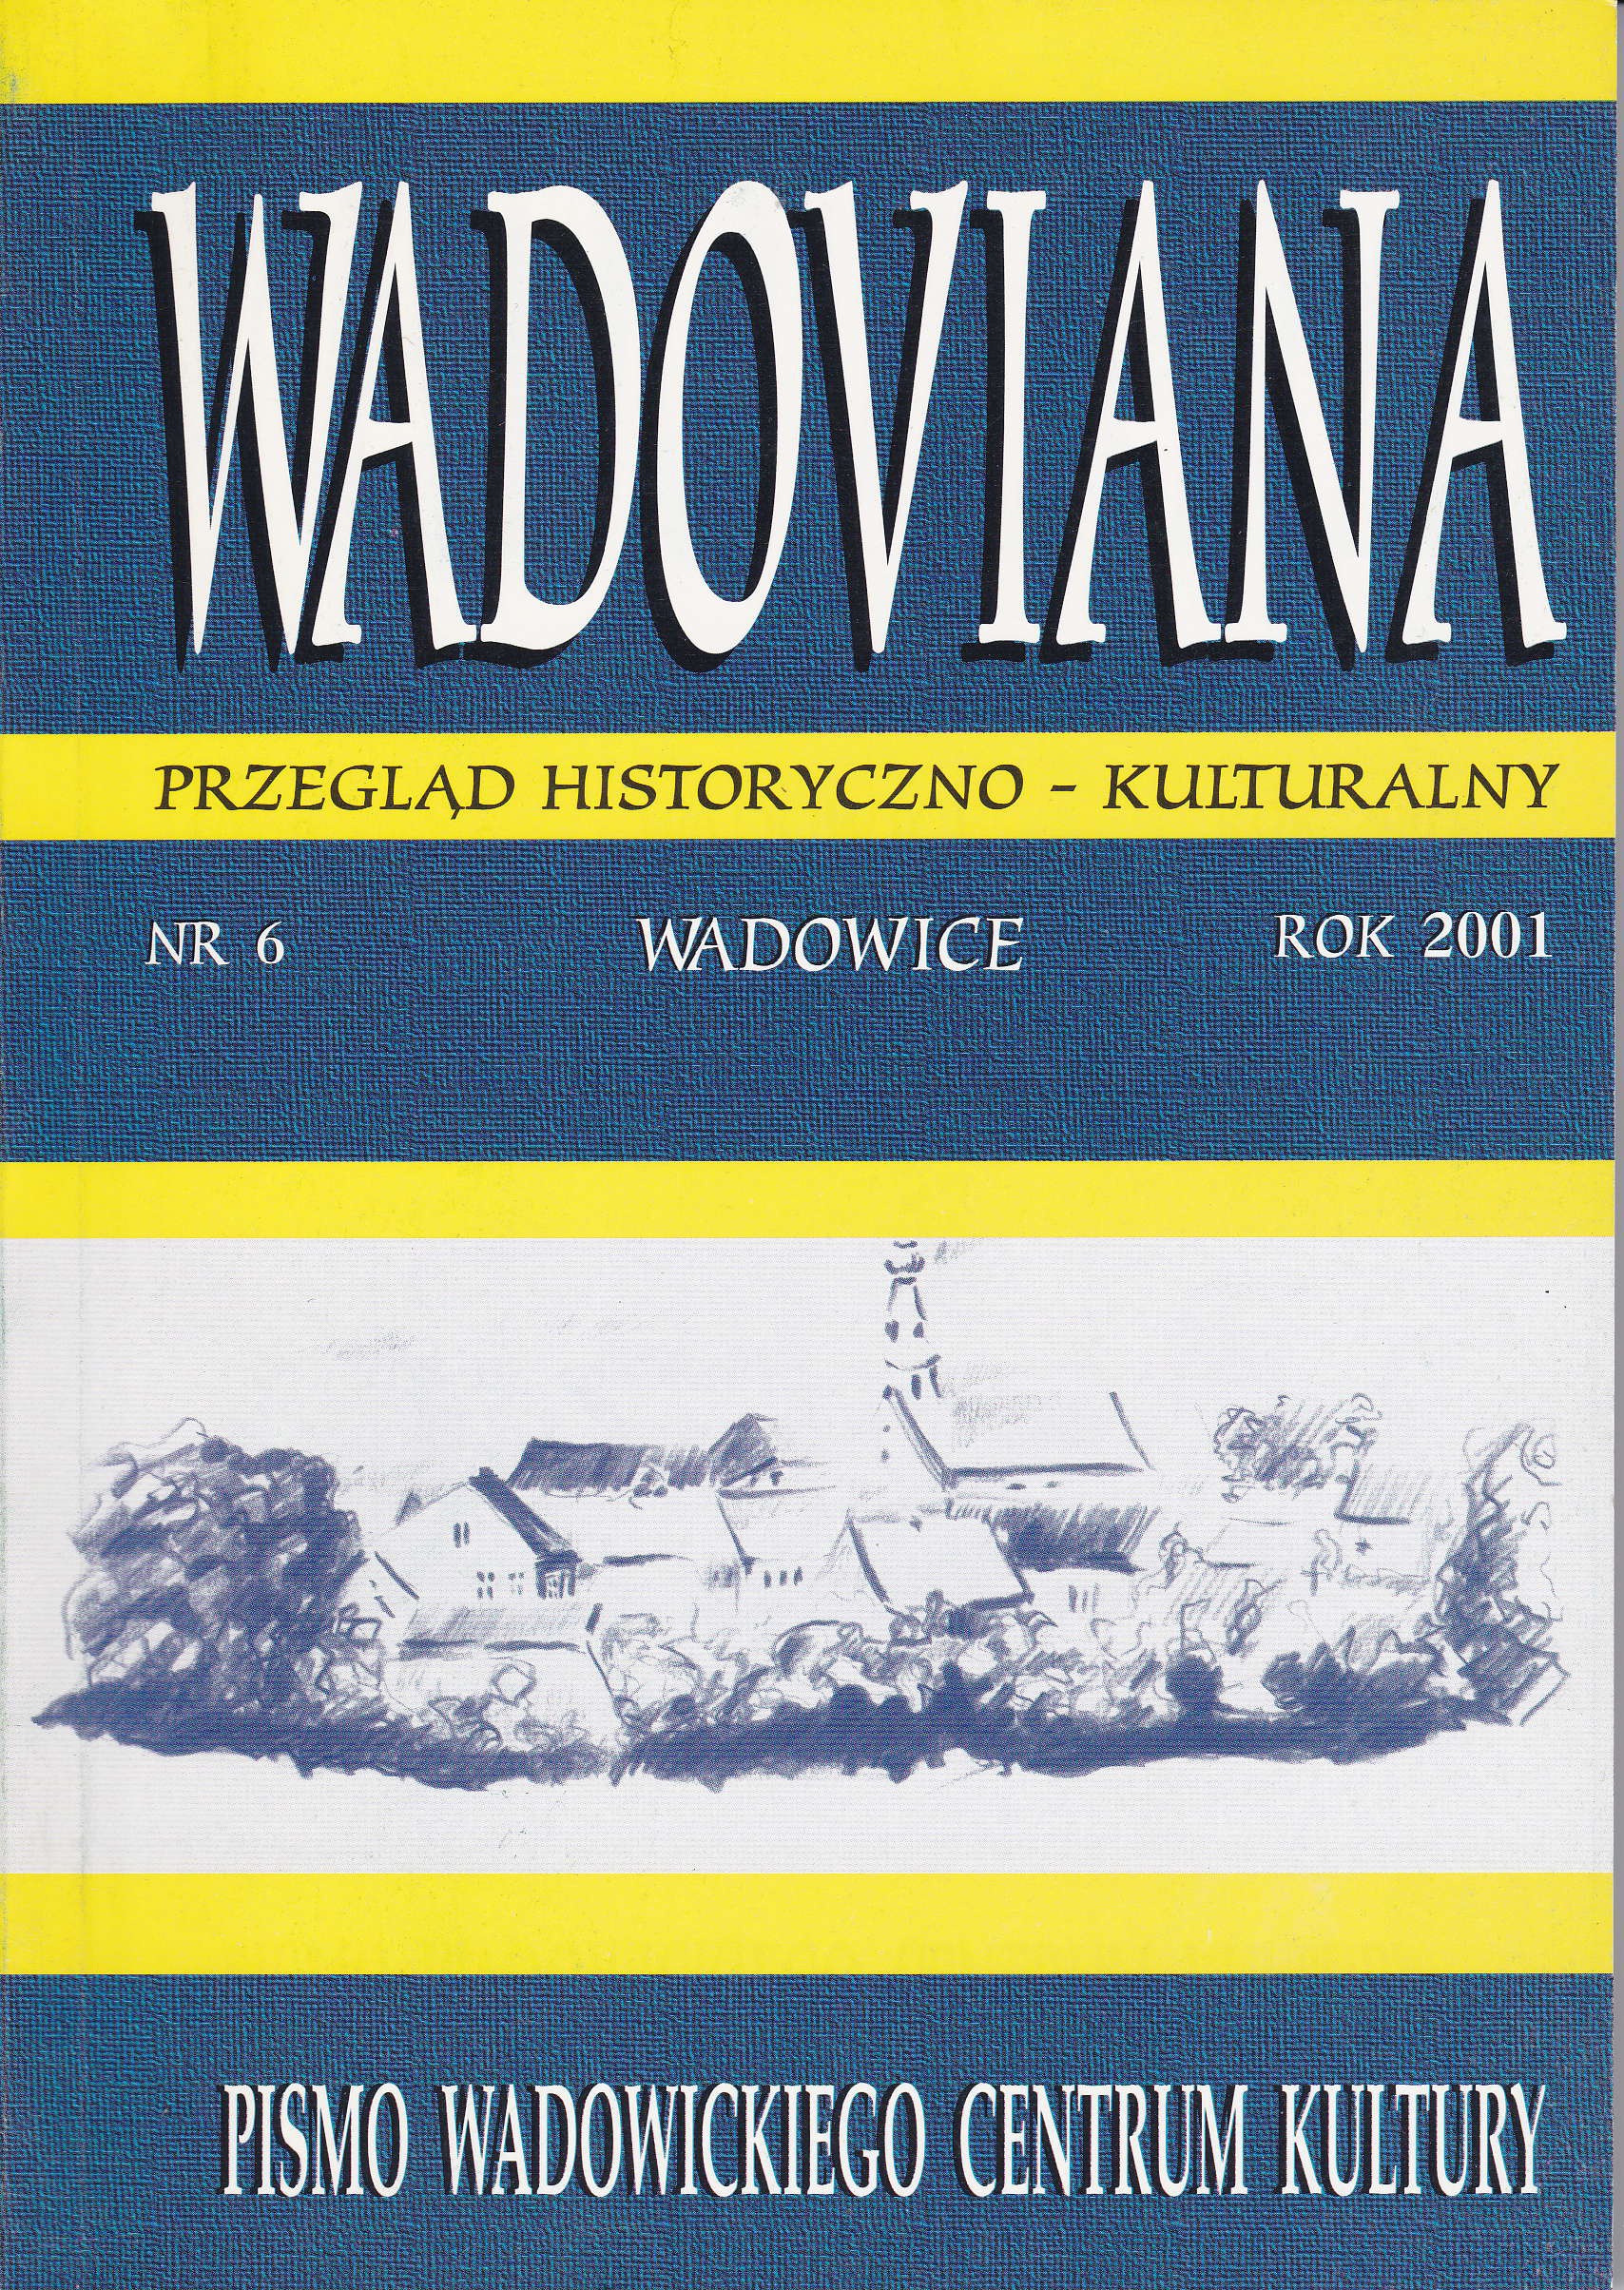 Starostwo Zatorskie, Kraków 2000 Cover Image